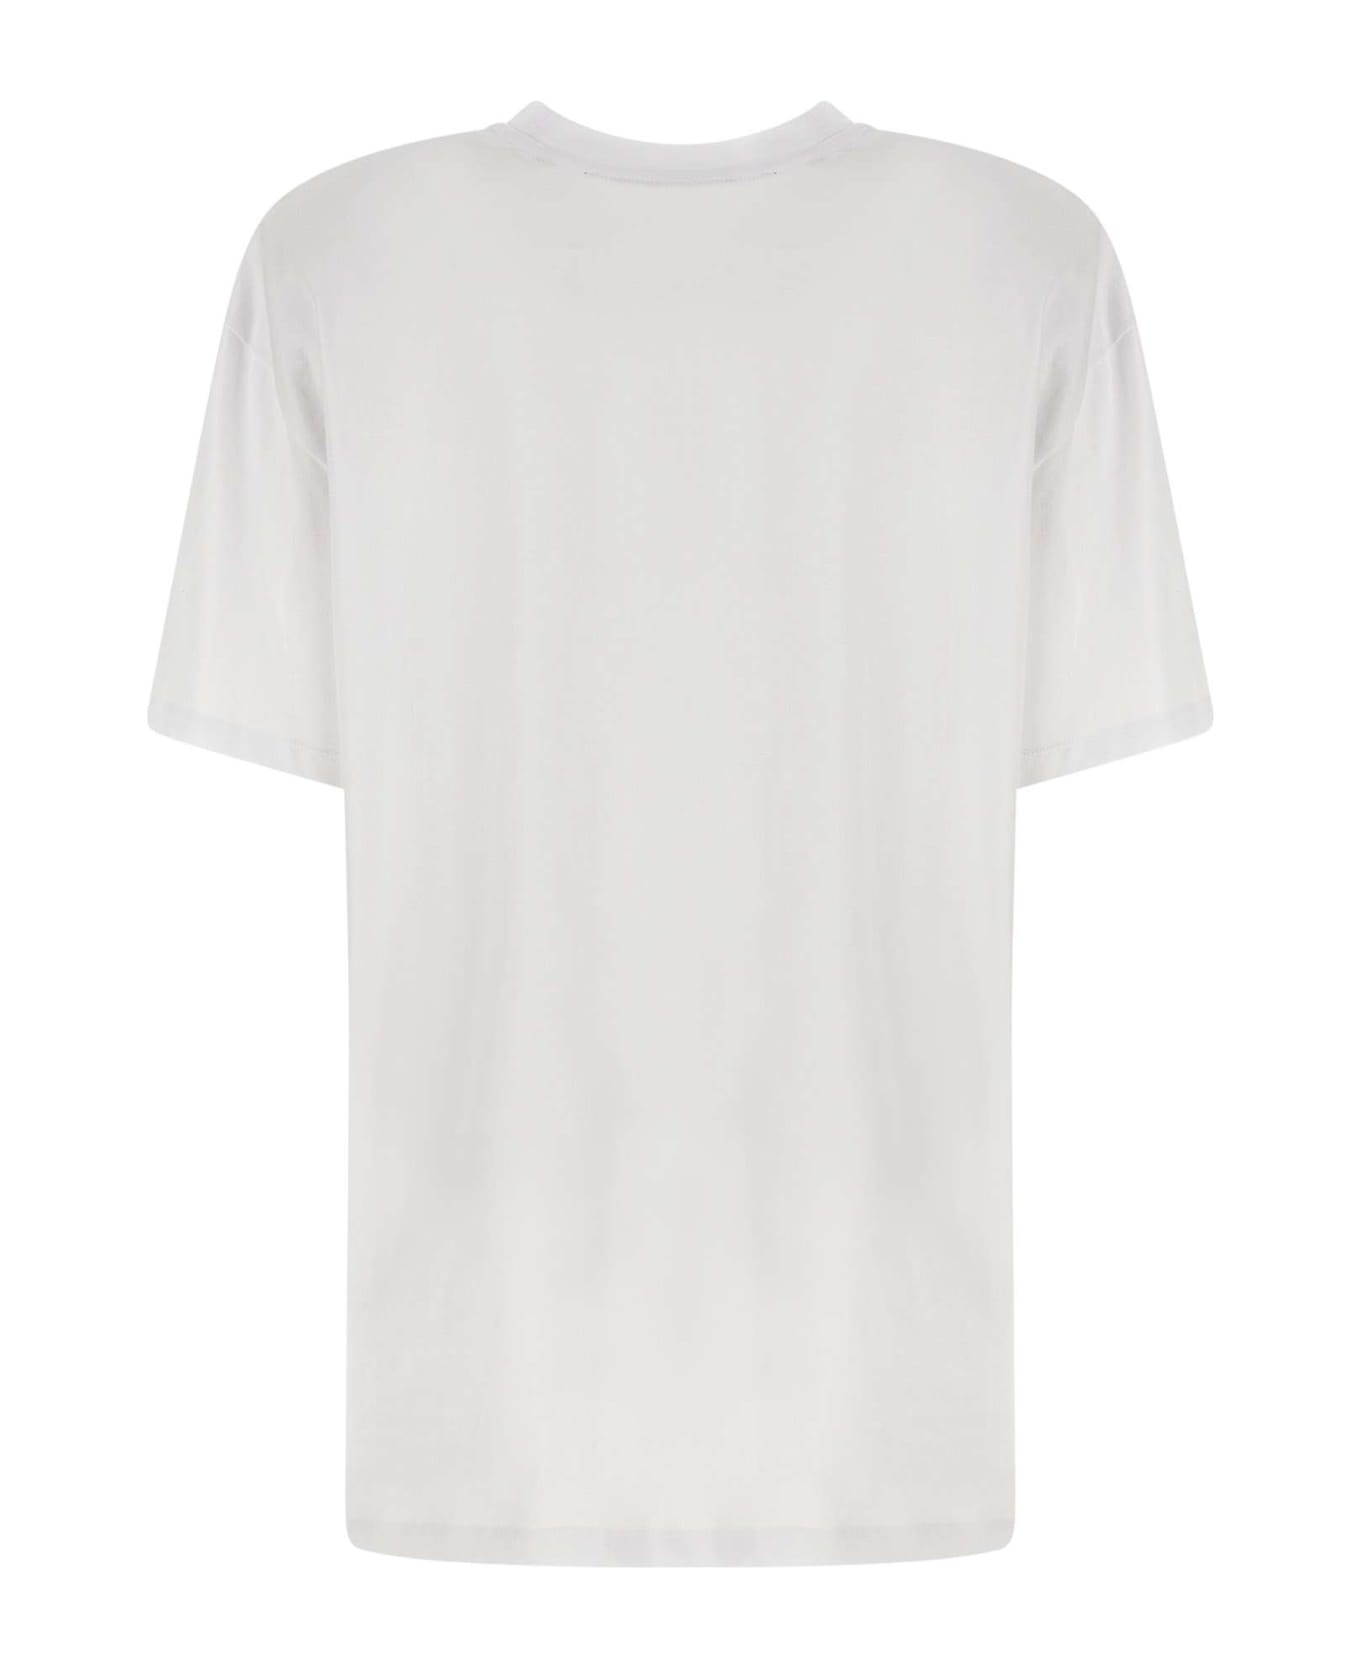 Rotate by Birger Christensen "graddy" Cotton T-shirt - WHITE